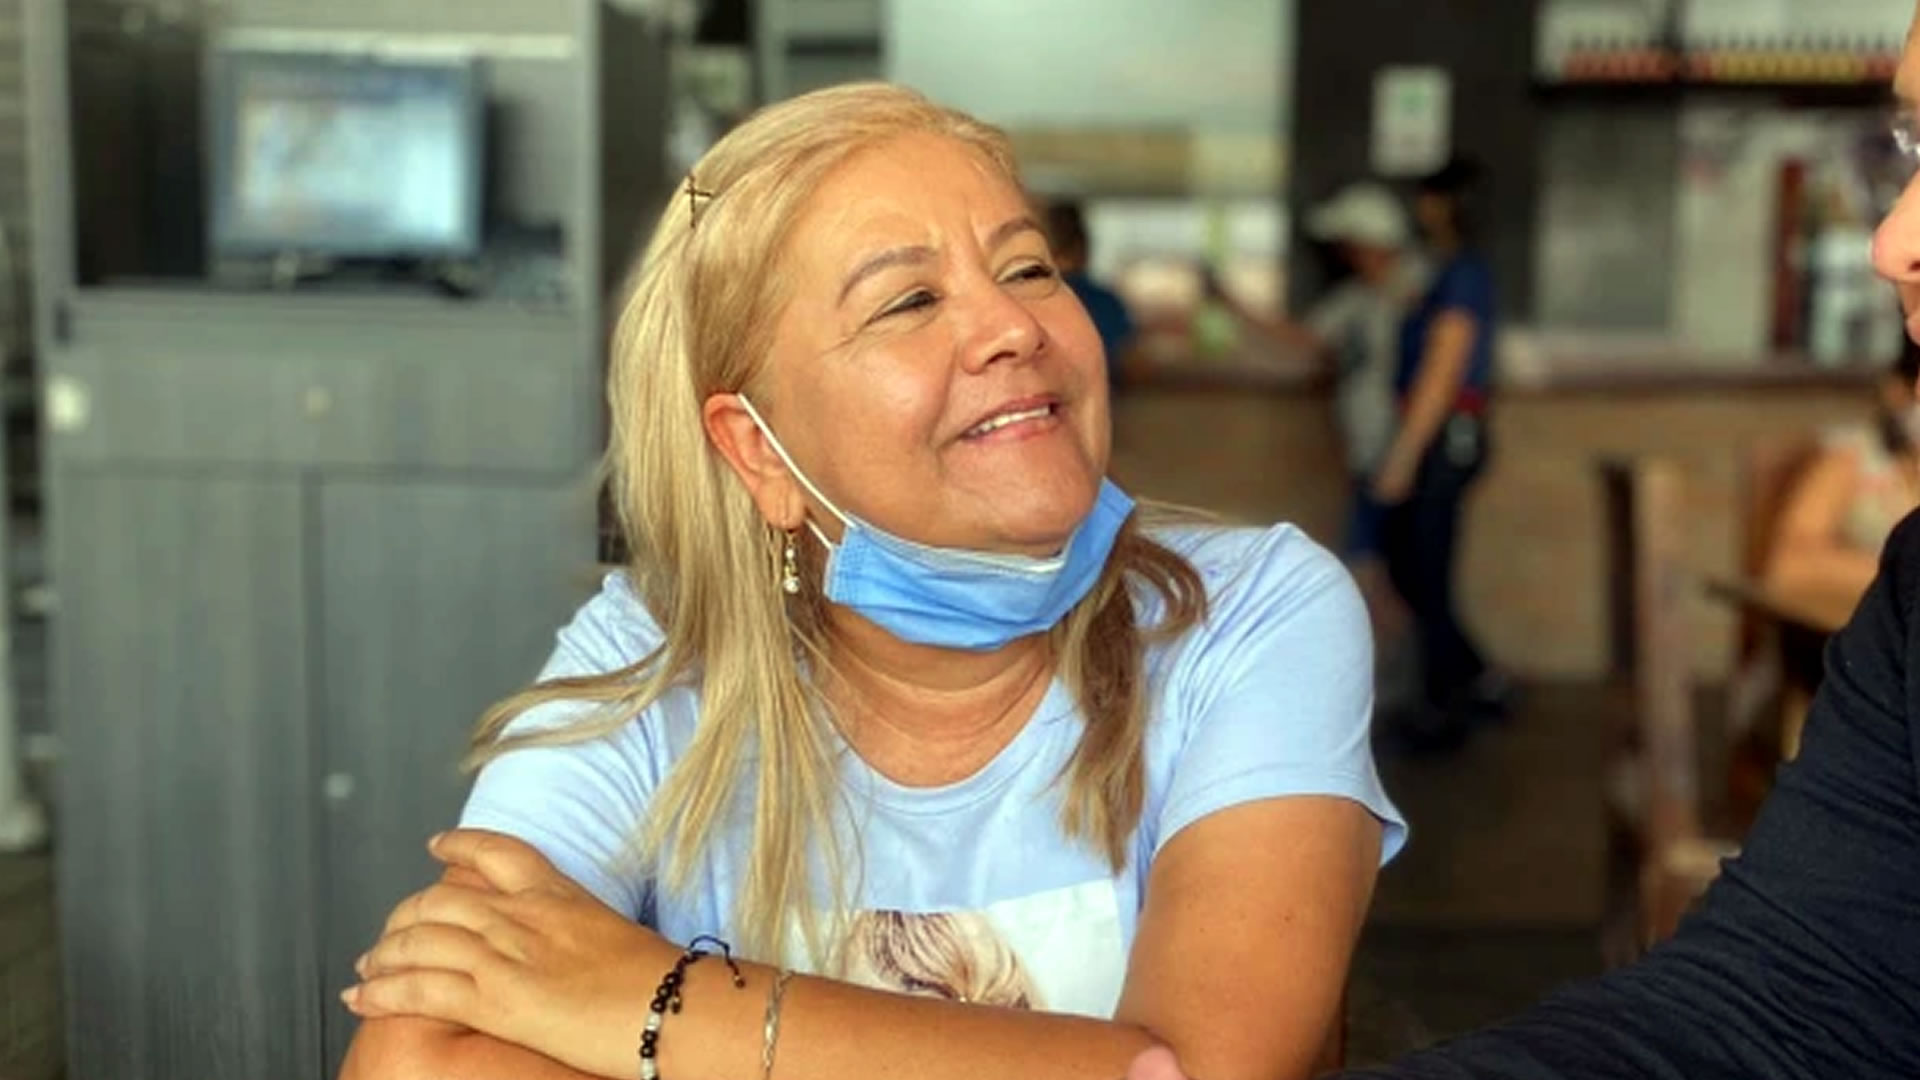 “Mi mamá está feliz”: así pasa Martha Sepúlveda su último día antes de recibir la eutanasia. Foto tomada de @Fede0830.